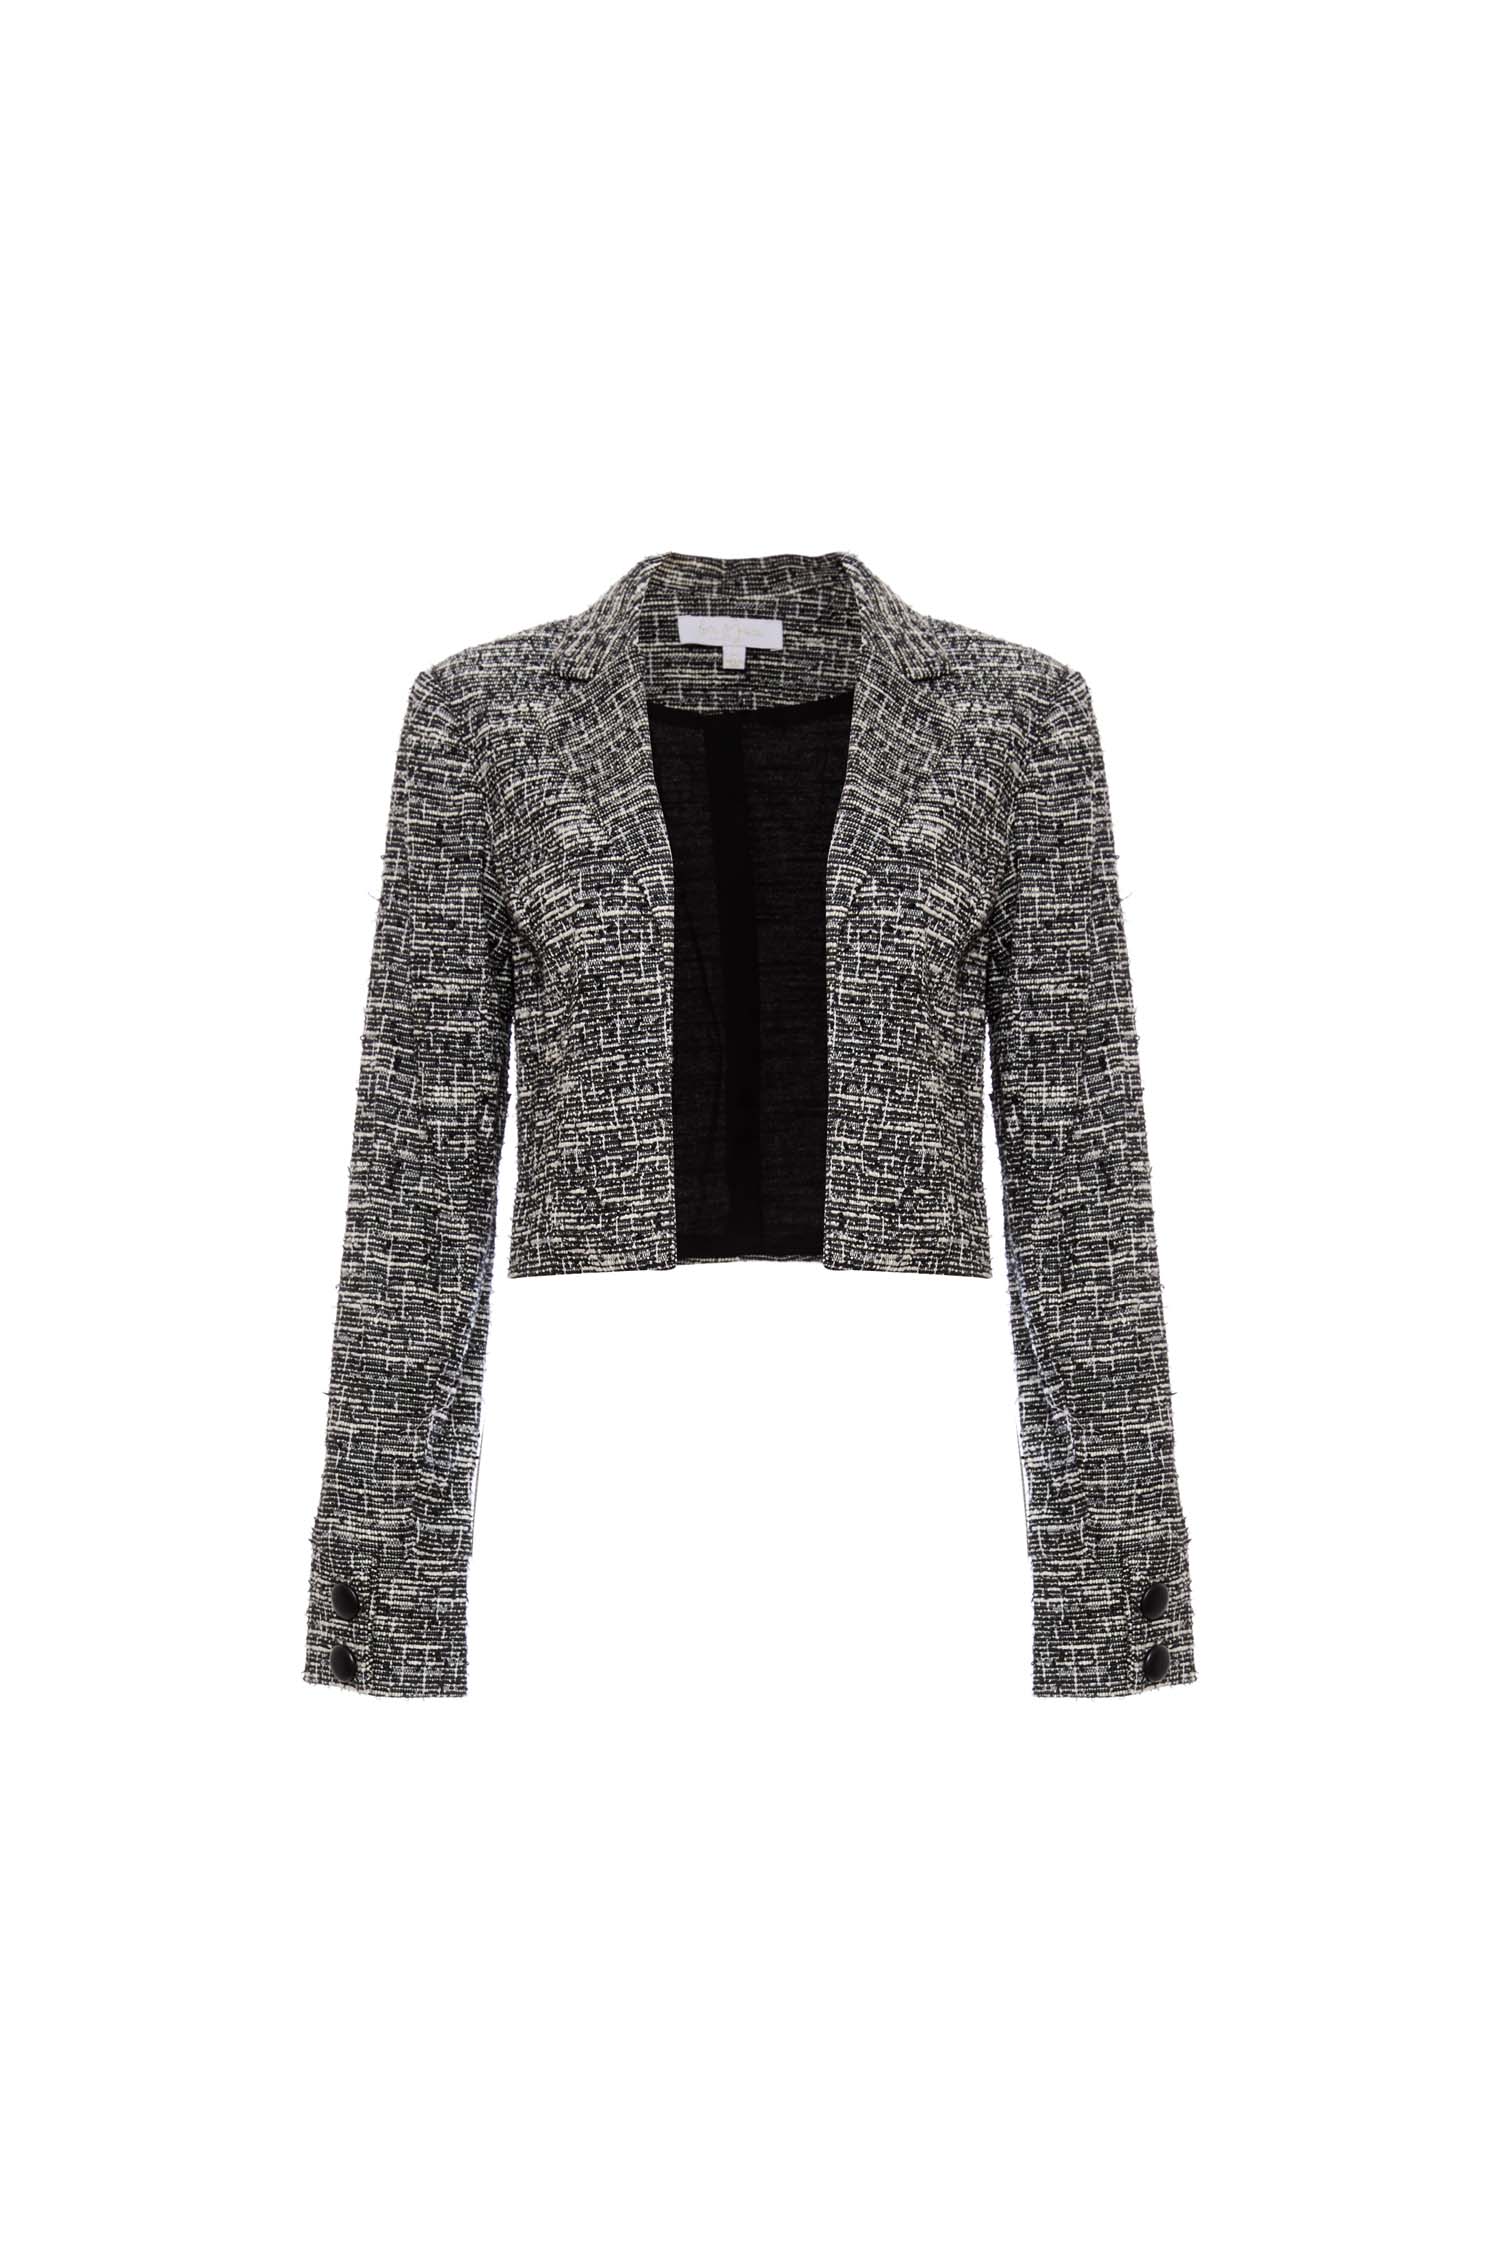 Tweed Cropped Jacket in Black Multi | DAILYLOOK